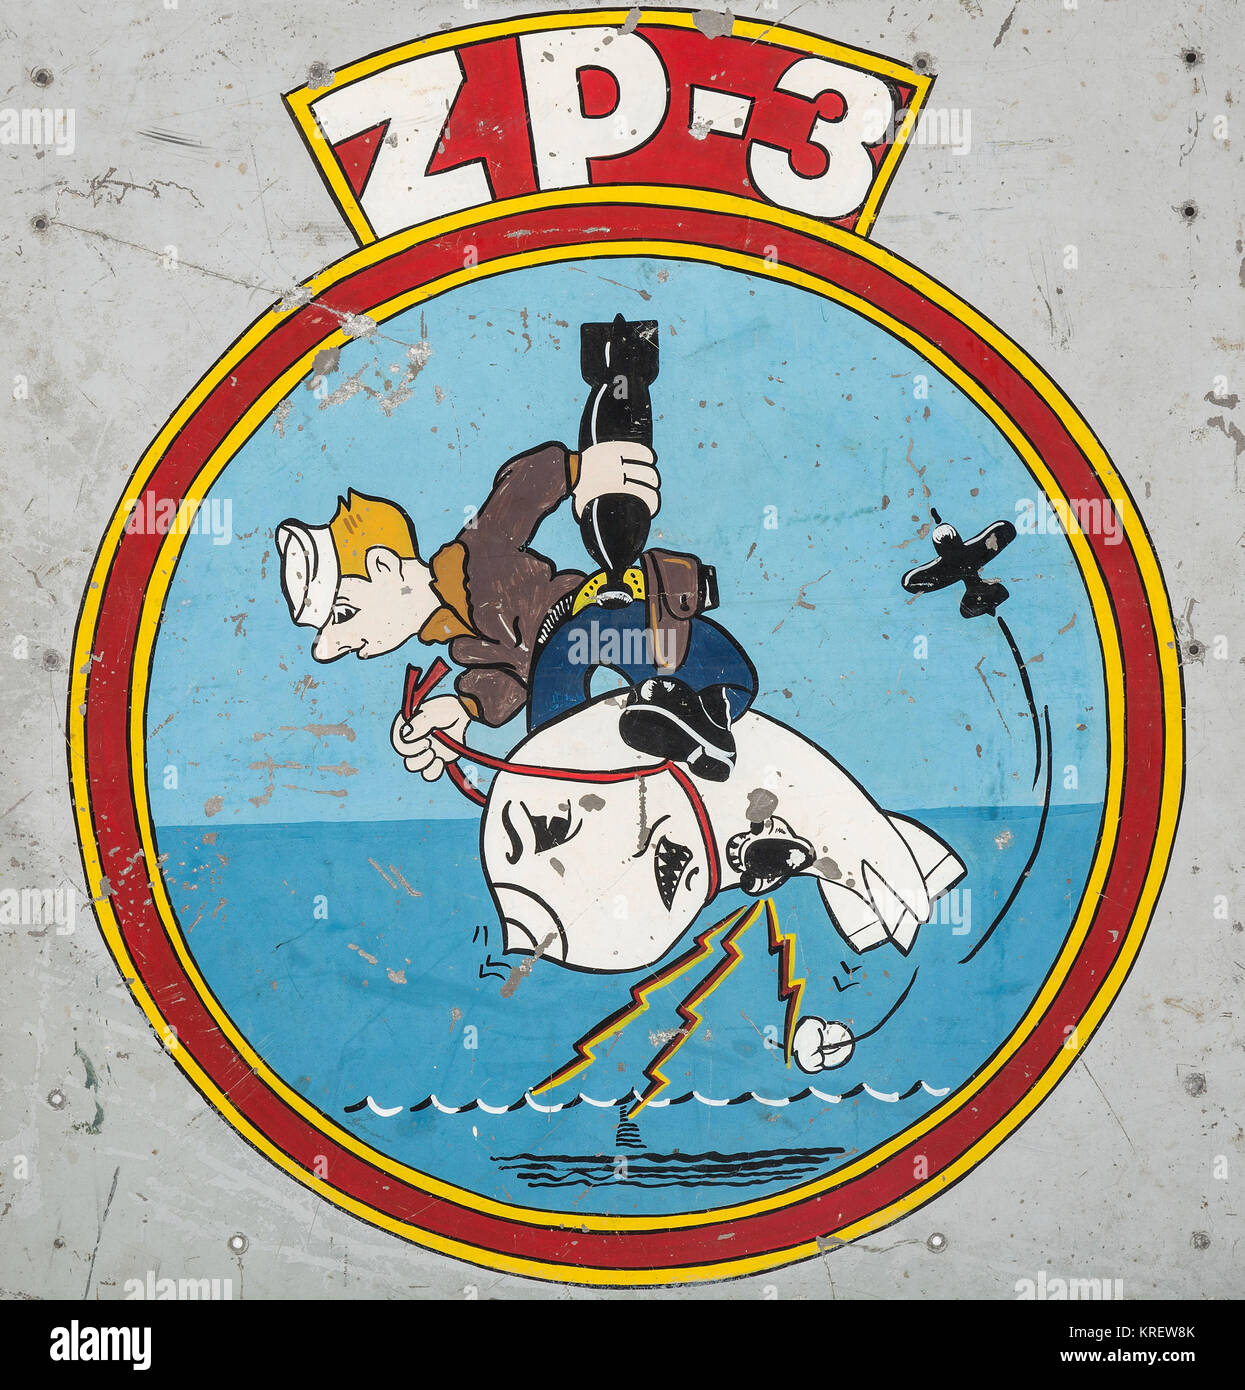 ZP-3 Airship Anti Submarine Squadron Stock Photo